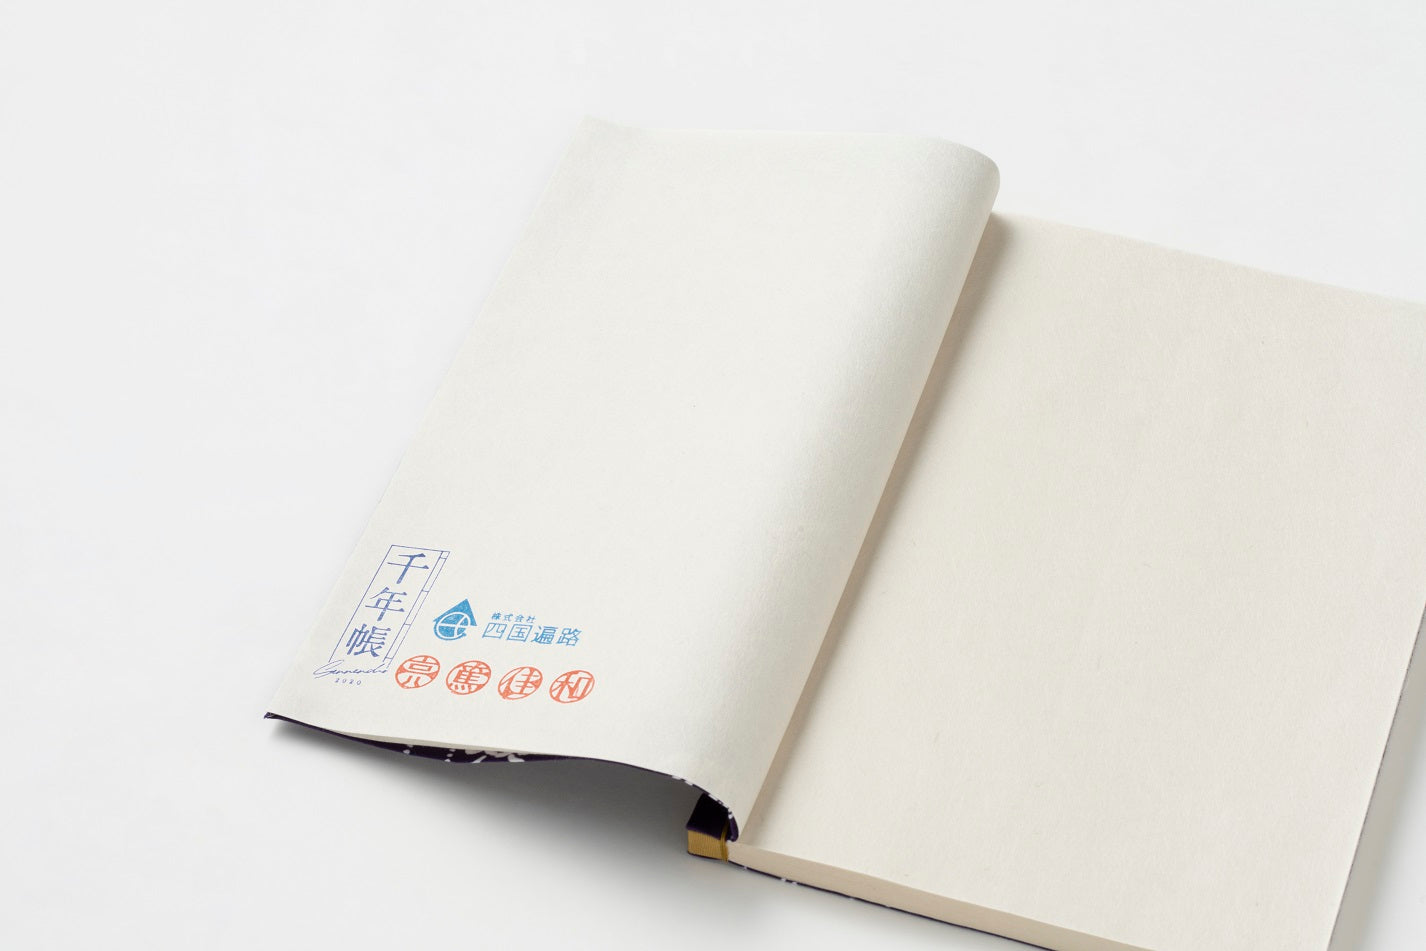 【納経帳】讃岐のり染「竹雀」 小判 38ページ 楮紙 藍×藍 のうきょうちょう